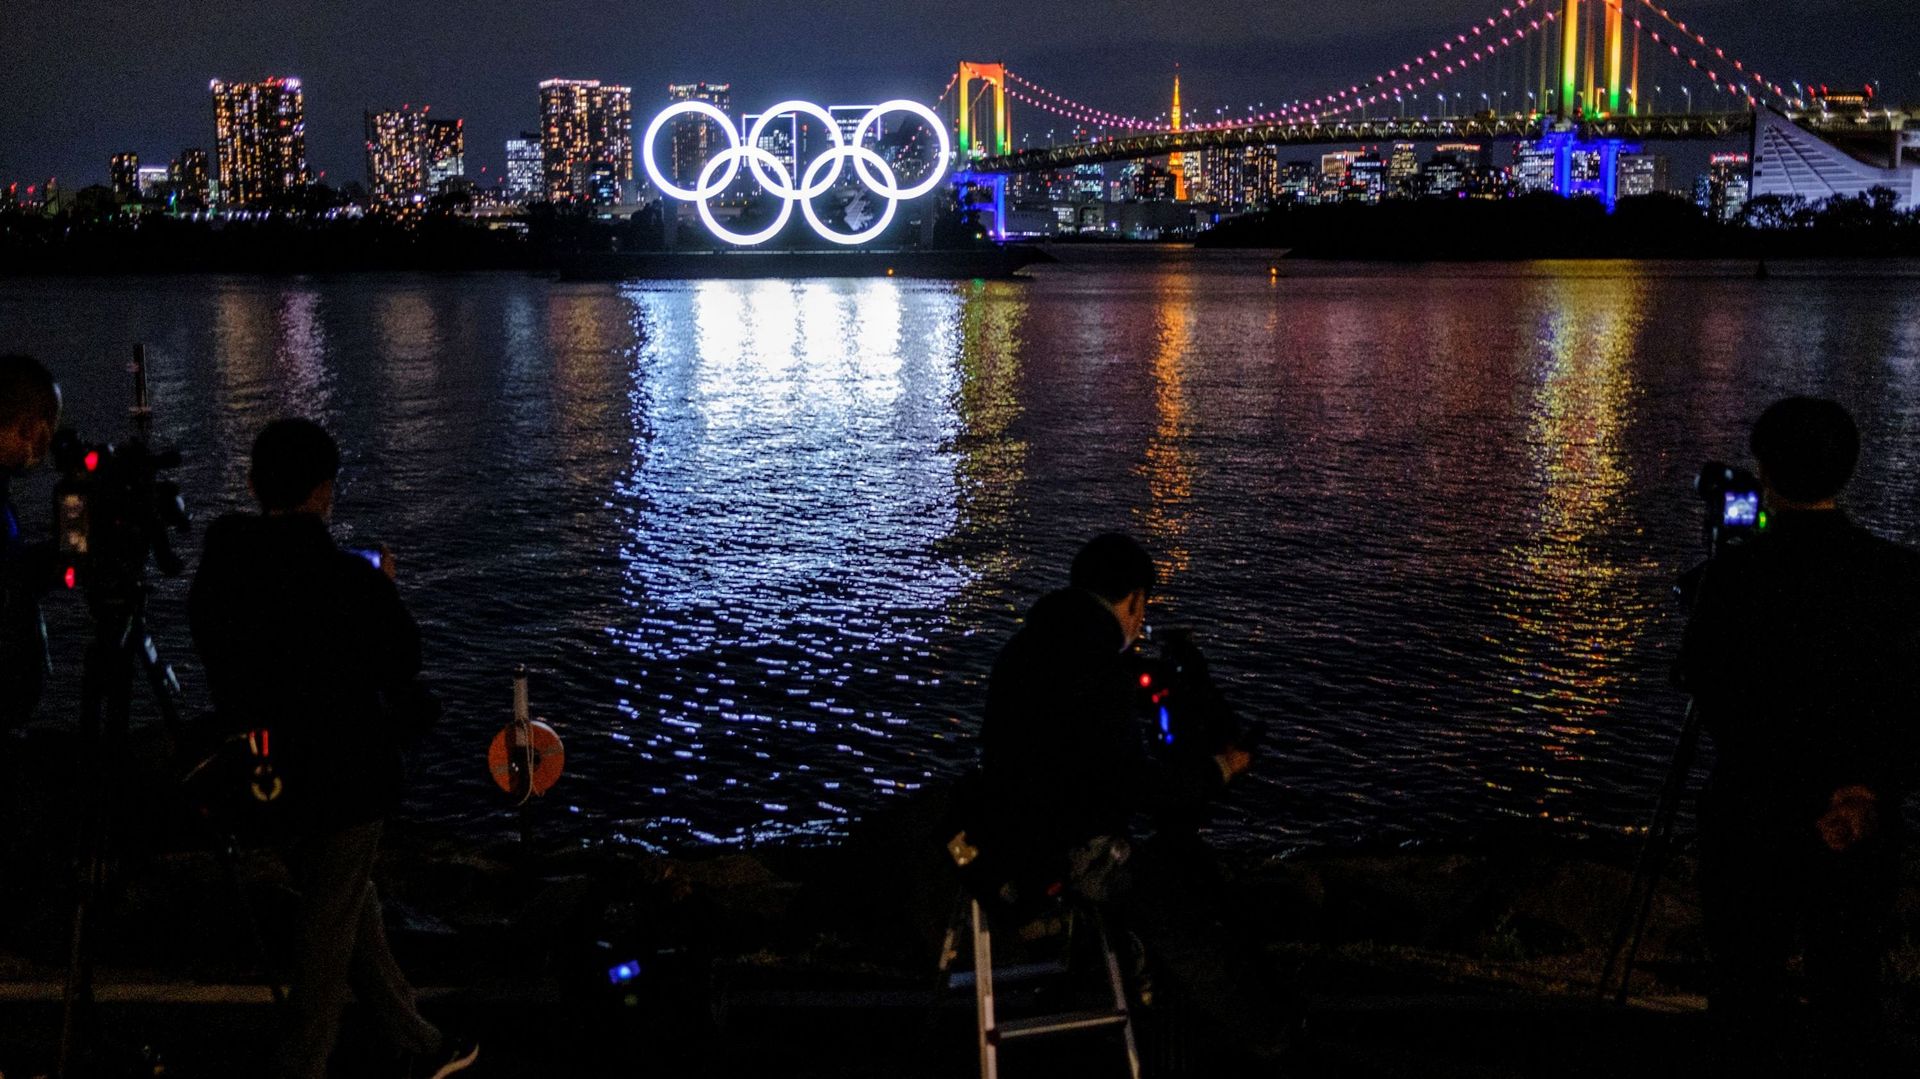 Les athlètes seront soumis à des règles très strictes aux JO de Tokyo